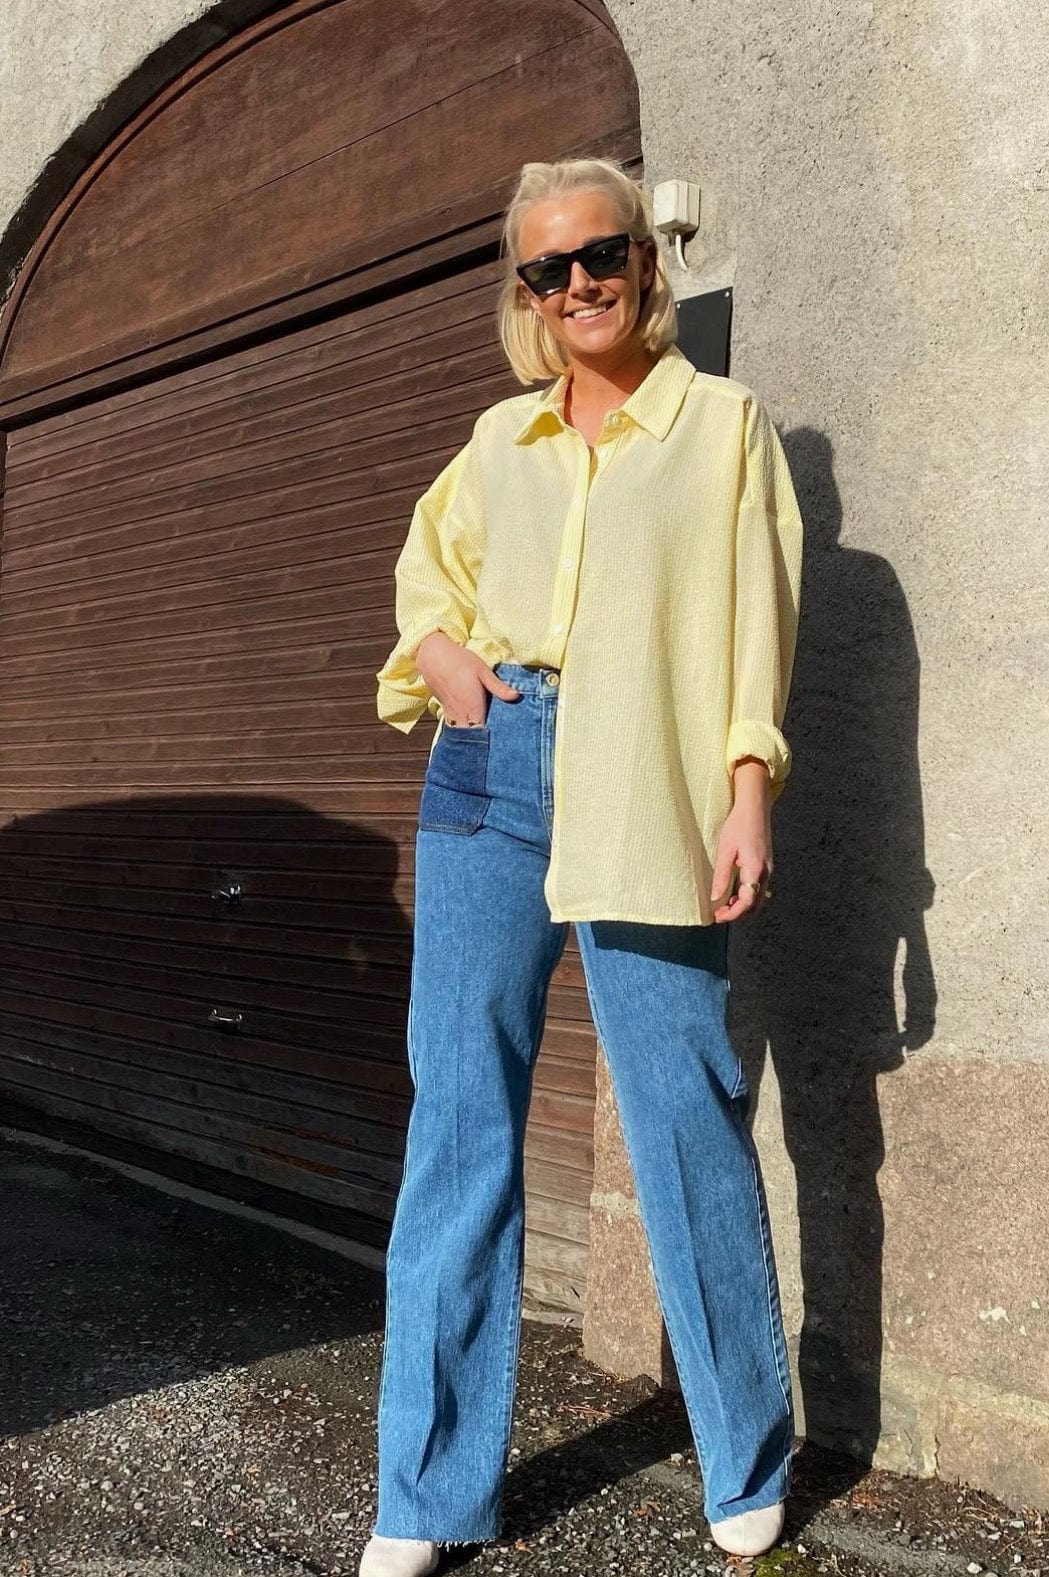 Sonja Shirt Yellow | Skjorter og bluser | Smuk - Dameklær på nett